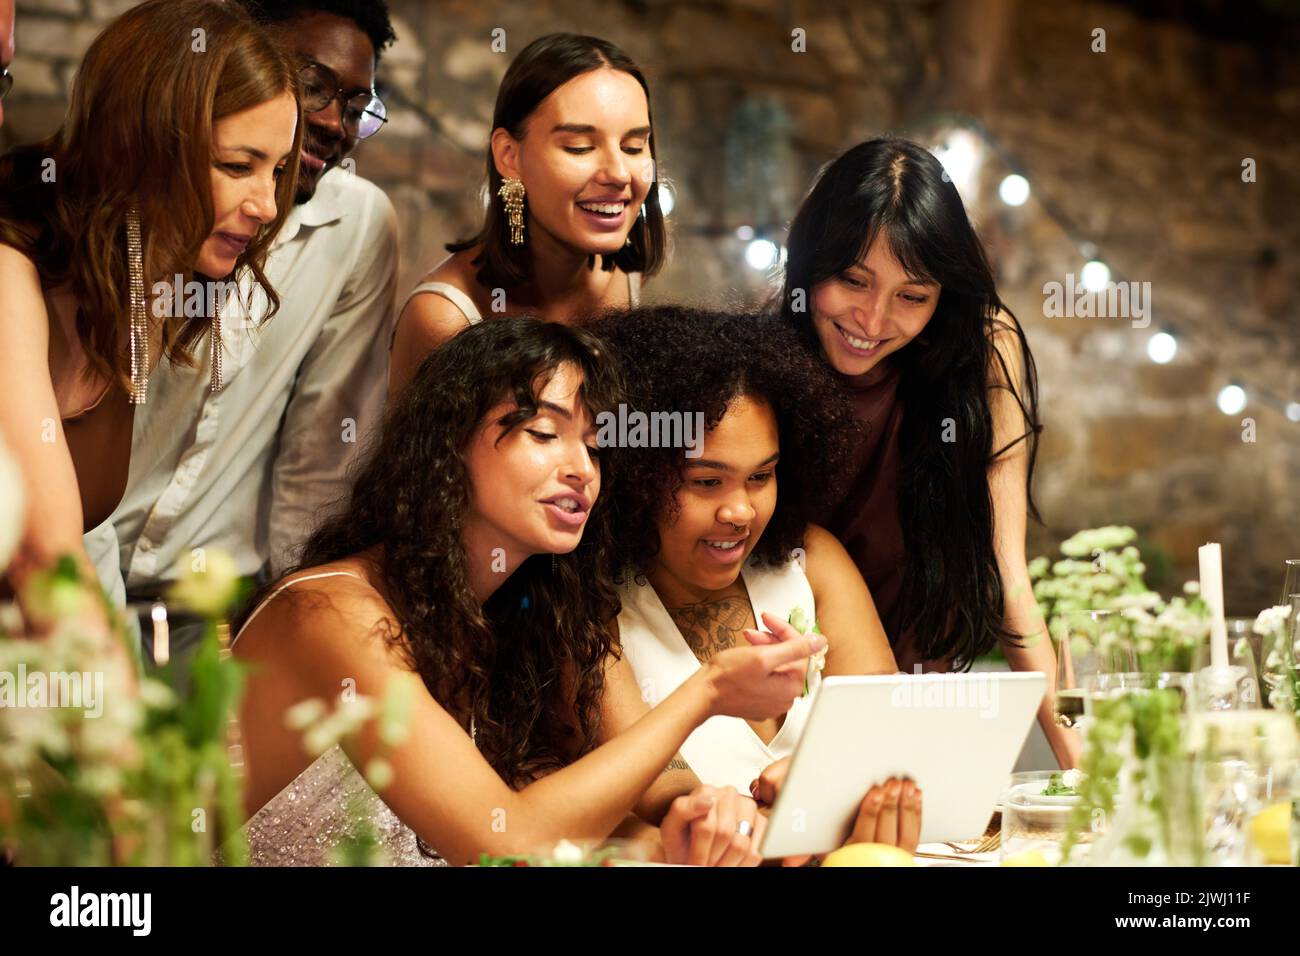 Zwei junge interkulturelle Bräute und ihre Freunde kommunizieren im Videochat, während sie an einem festlichen Tisch sitzen, der während der Hochzeitsfeier serviert wird Stockfoto